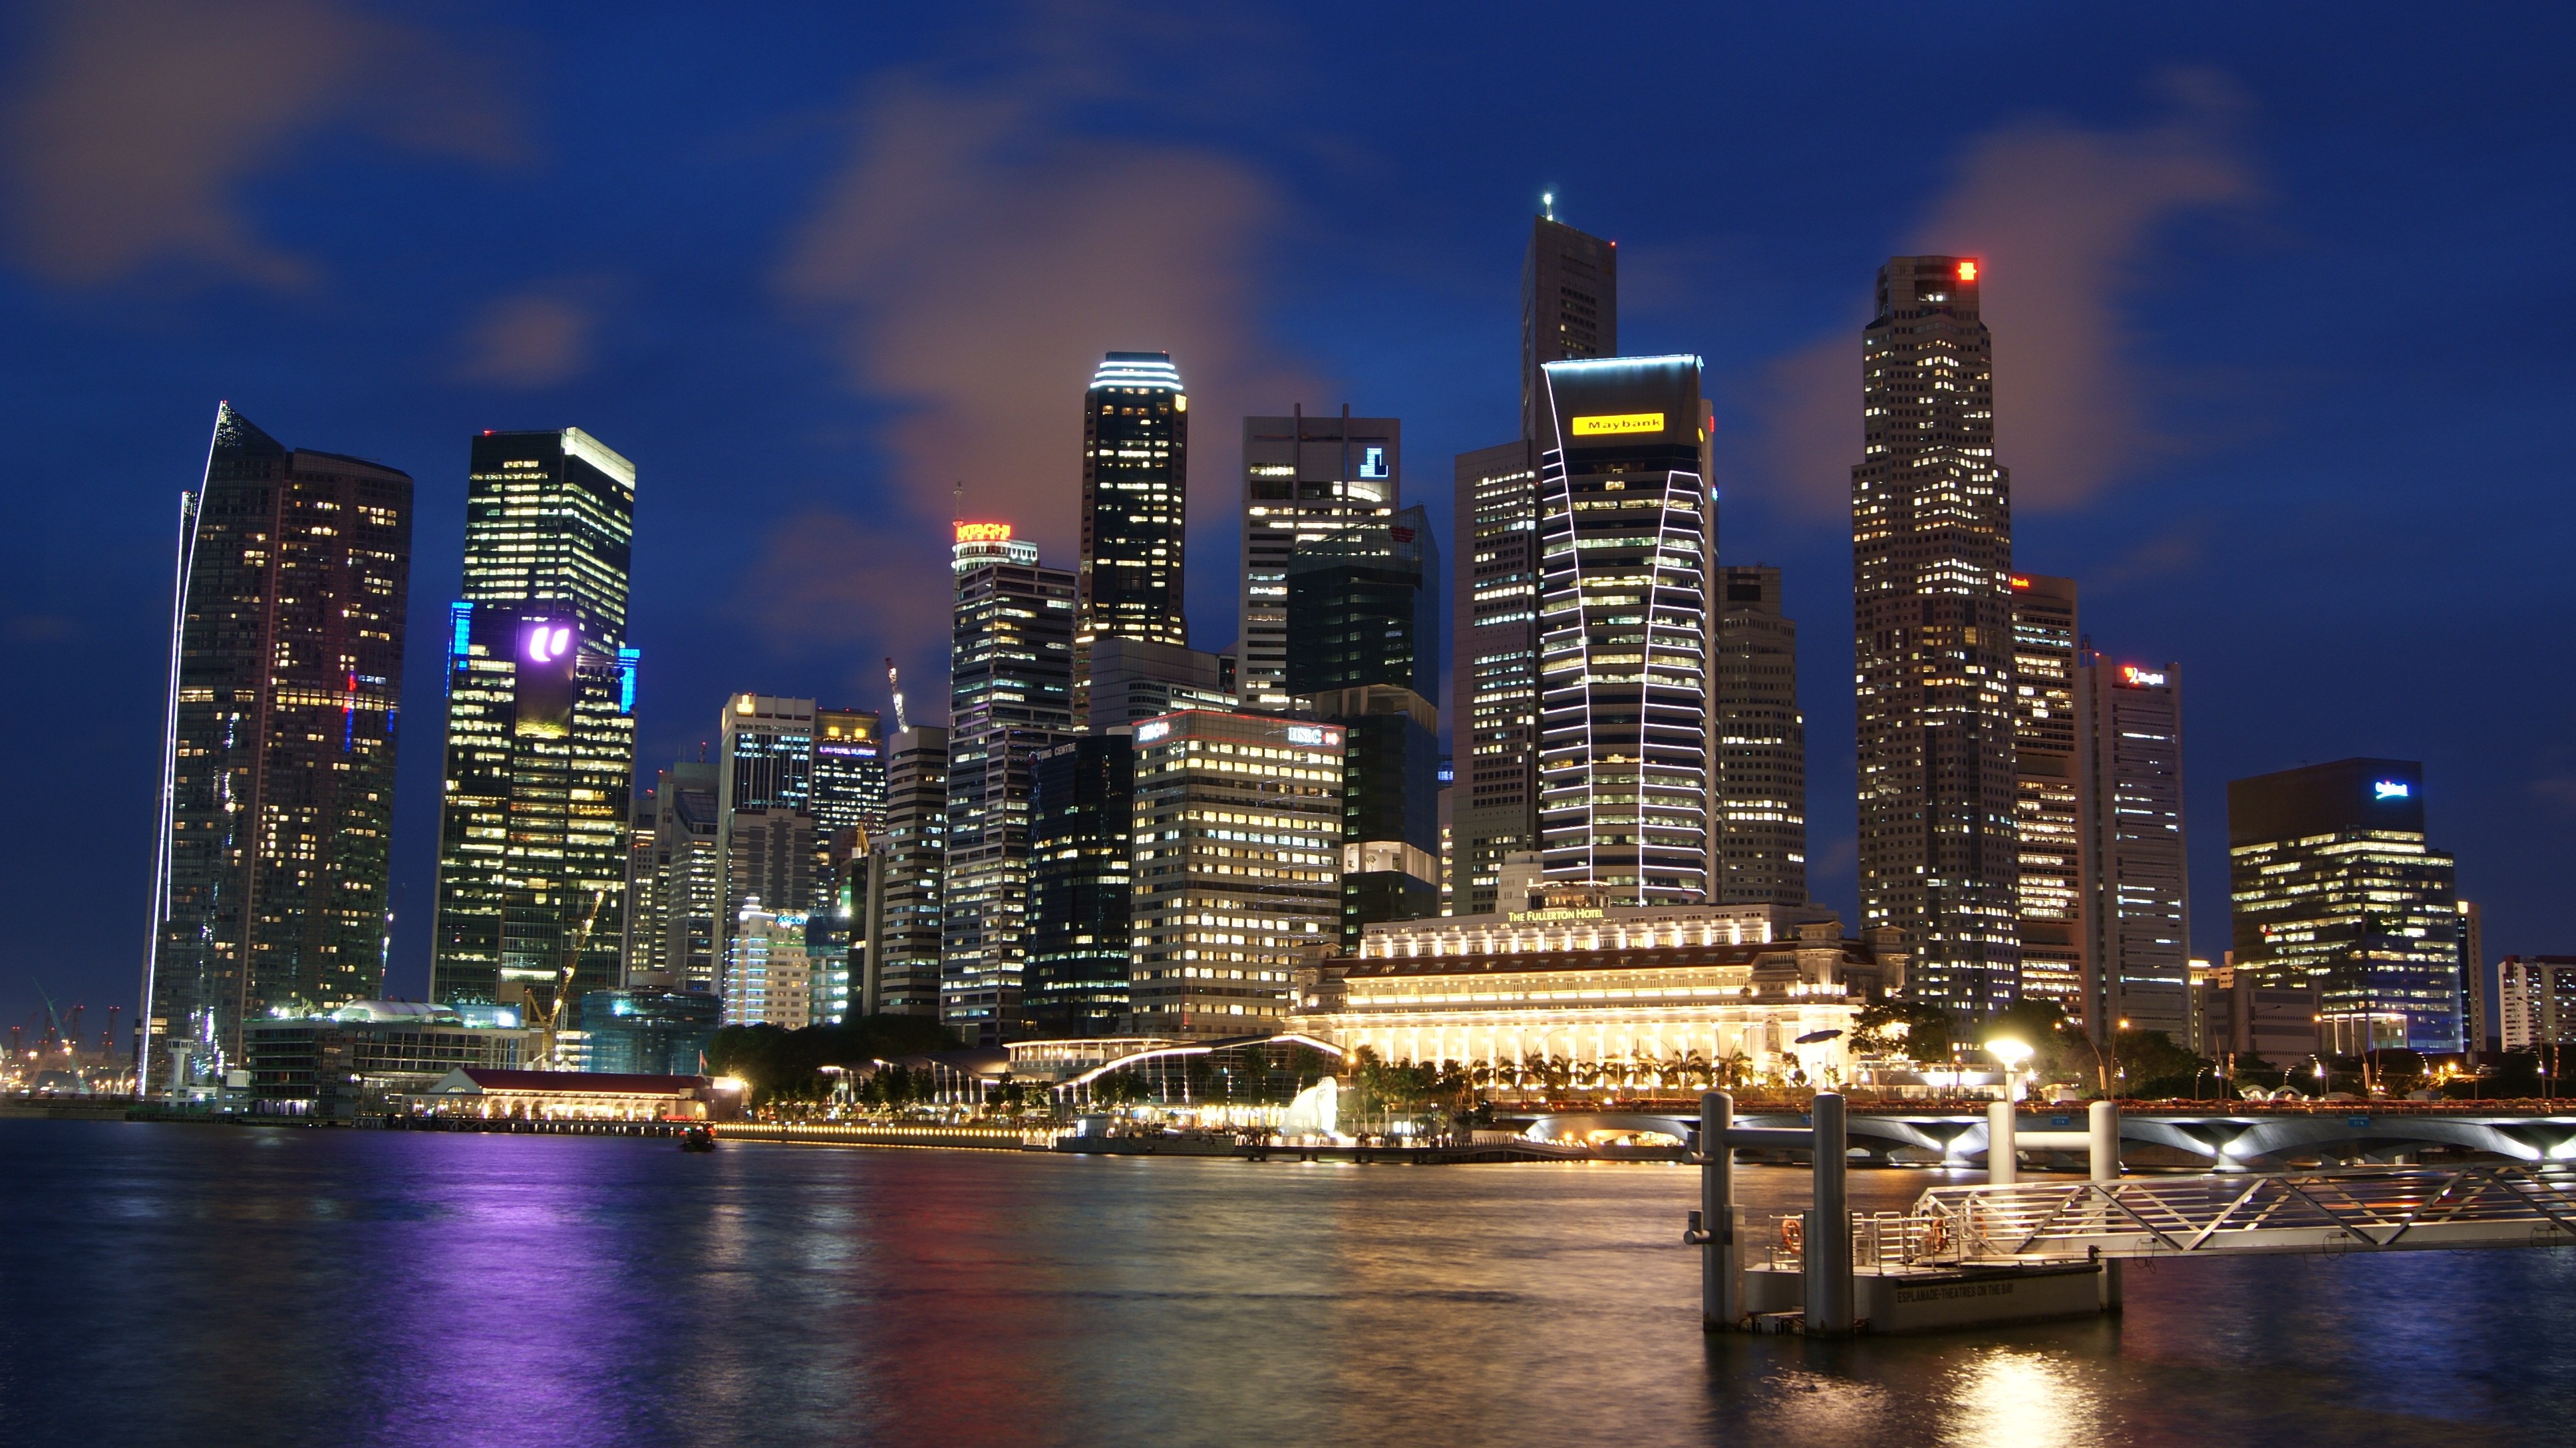 Singapore_Skyline_at_Night_with_Blue_Sky.JPG